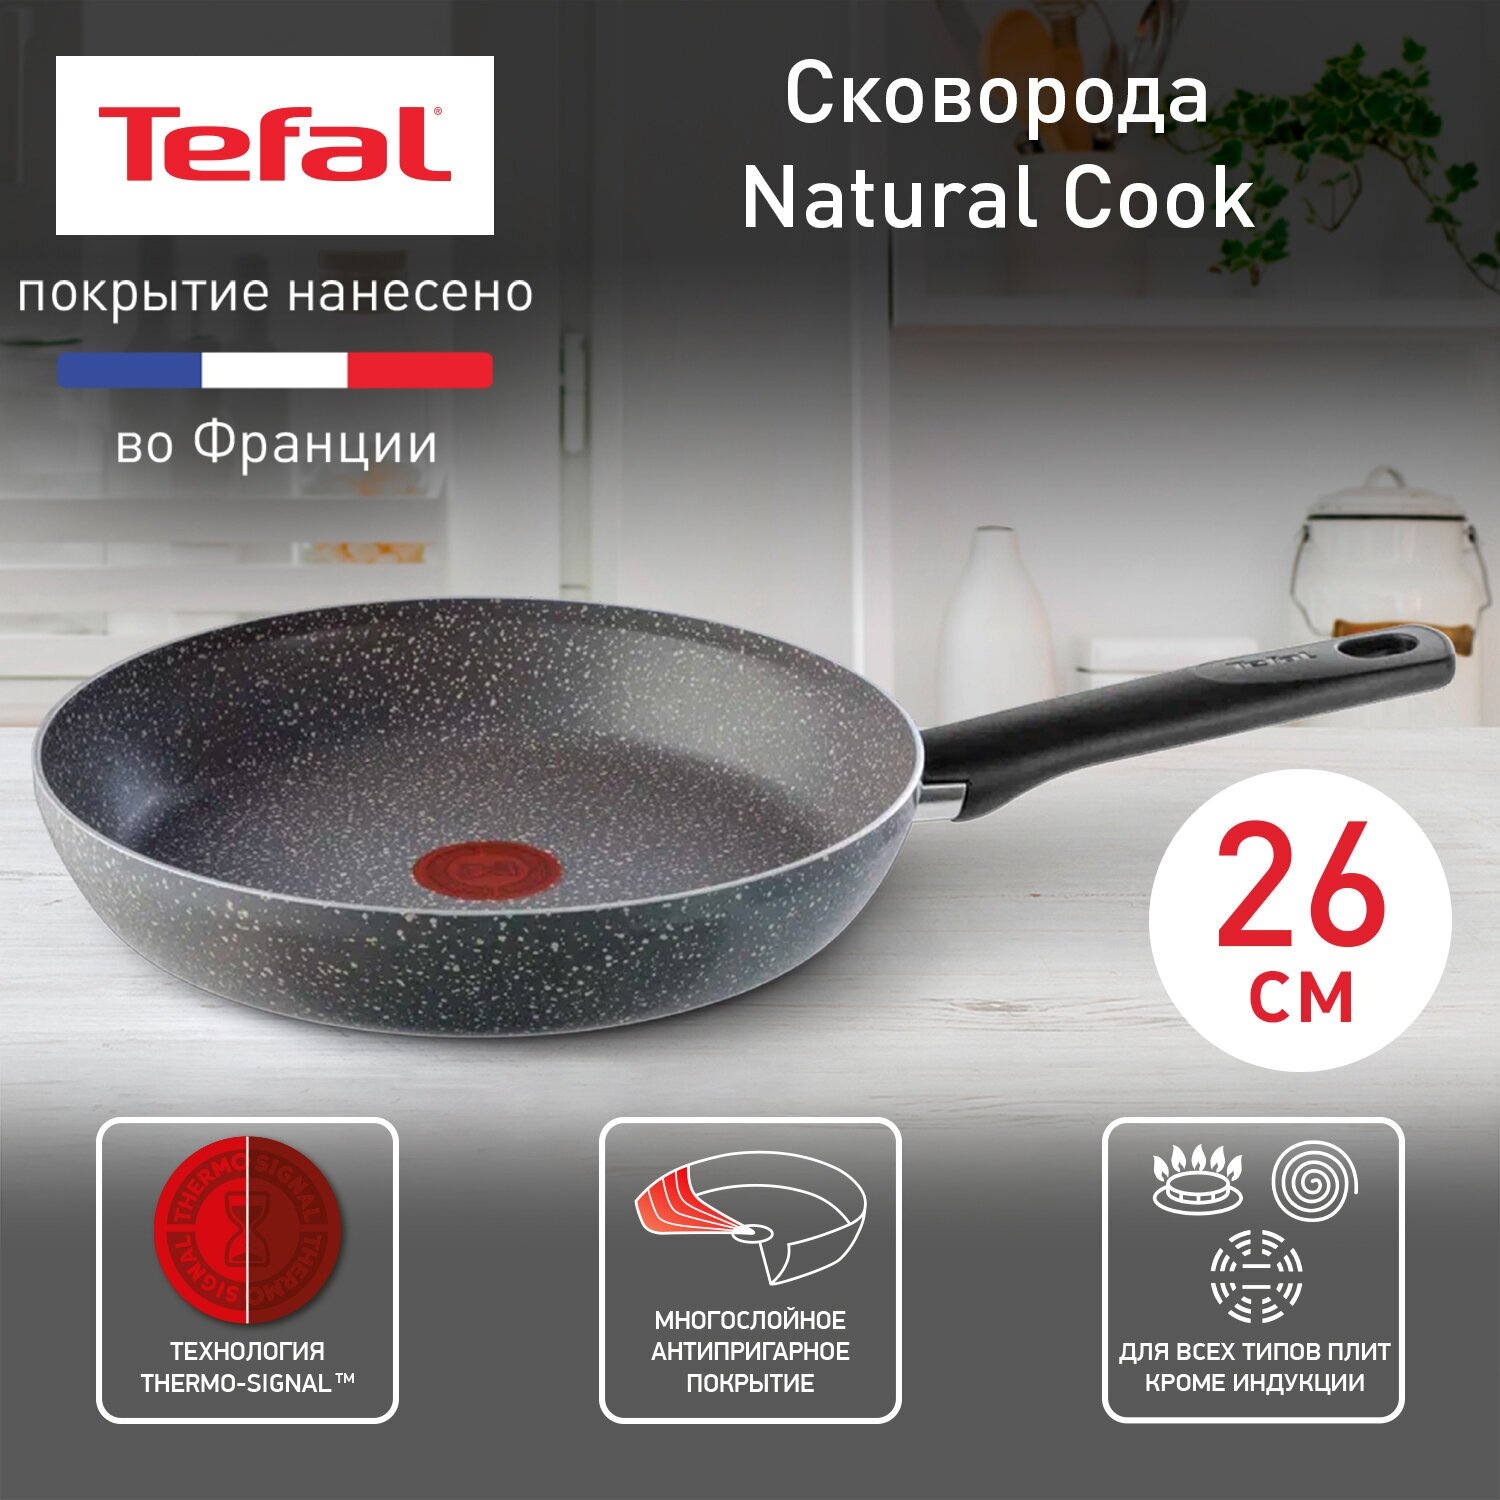 Сковорода Tefal Natural Cook 04211124, диаметр 24 см, с индикатором температуры и антипригарным покрытием, для газовых, электрических плит